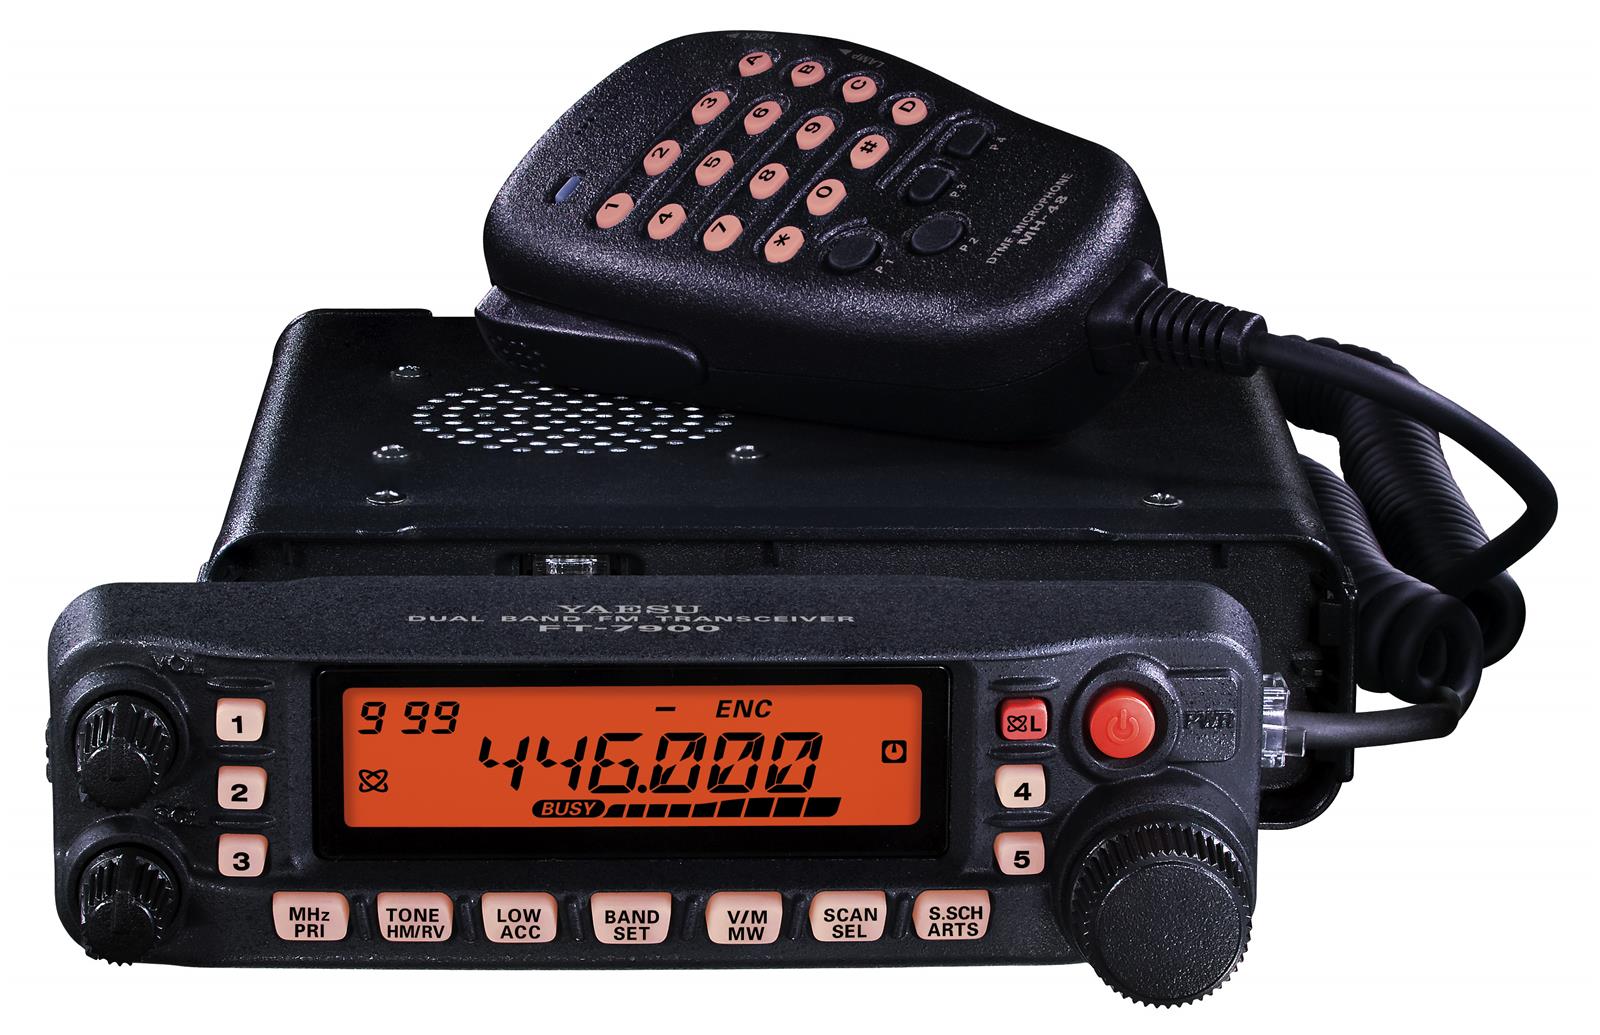 Yaesu FT-65 Review: Dual Band 2 Meter/70CM Ham Radio